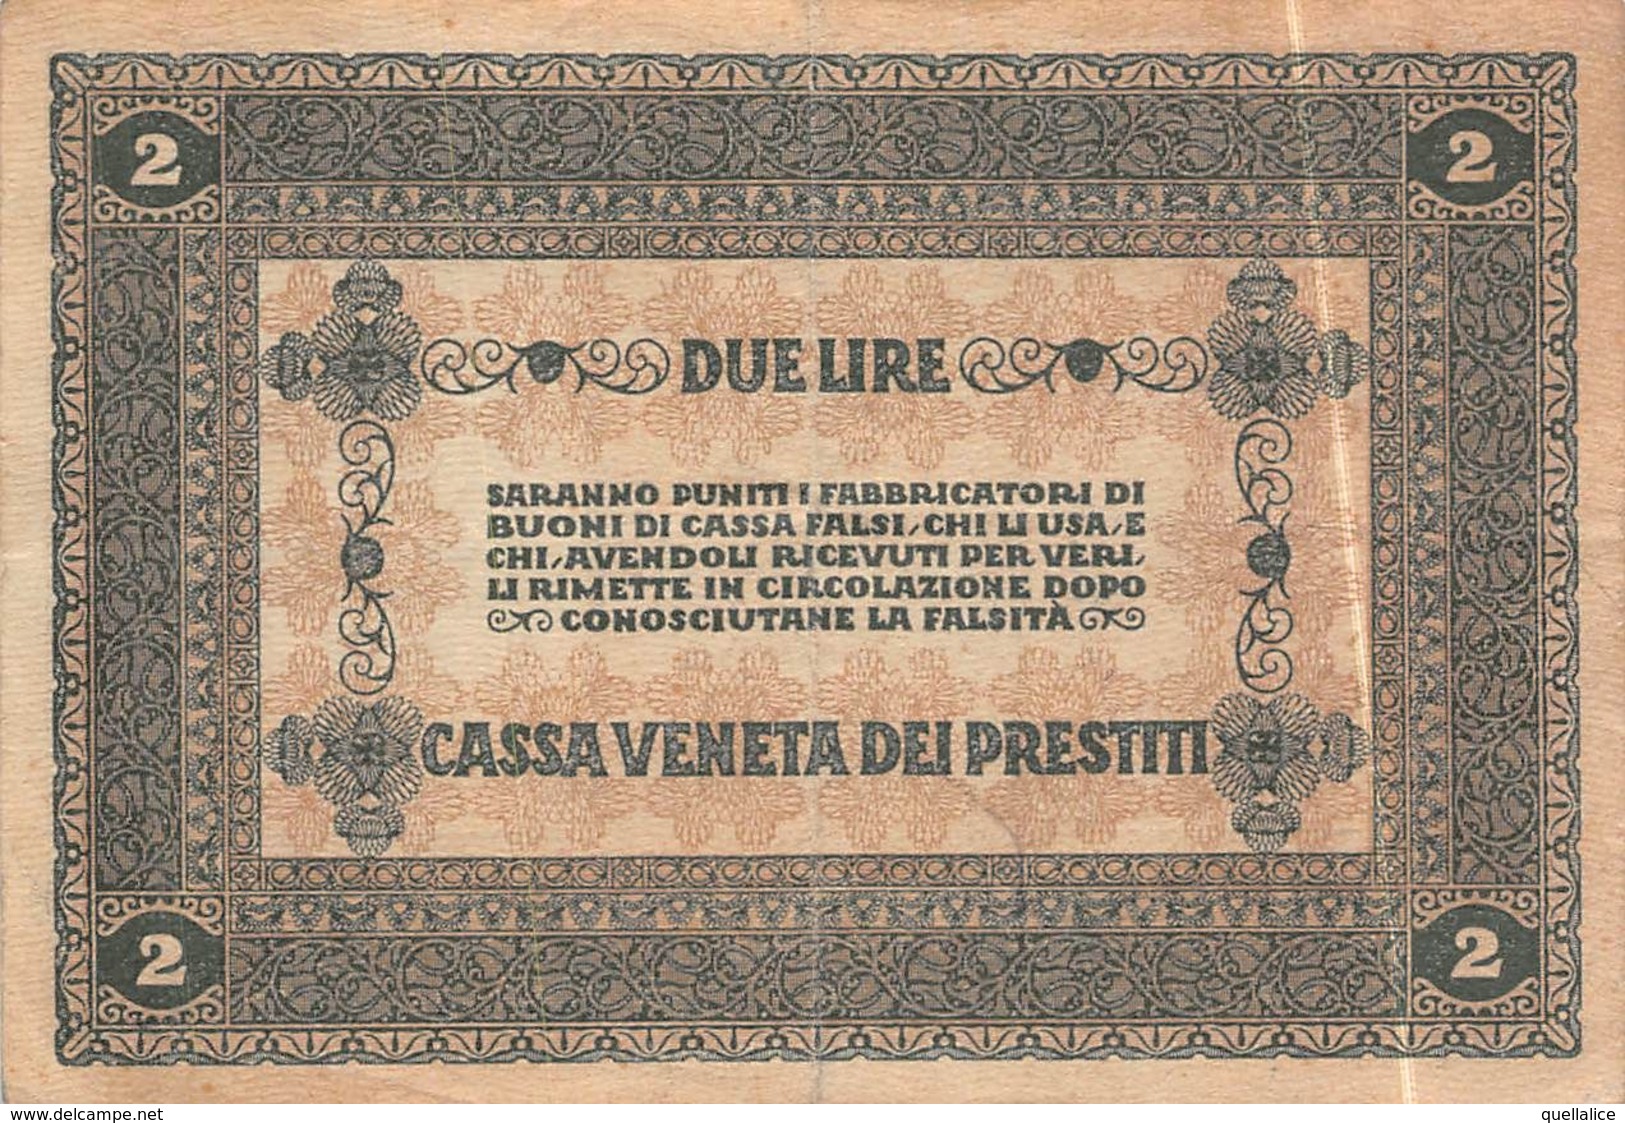 01616 "CASSA VENETA DEI PRESTITI - 2 GENNAIO 1918 - BUONO CASSA A CORSO LEGALE DA DUE LIRE" ORIGINALE - [10] Cheques En Mini-cheques